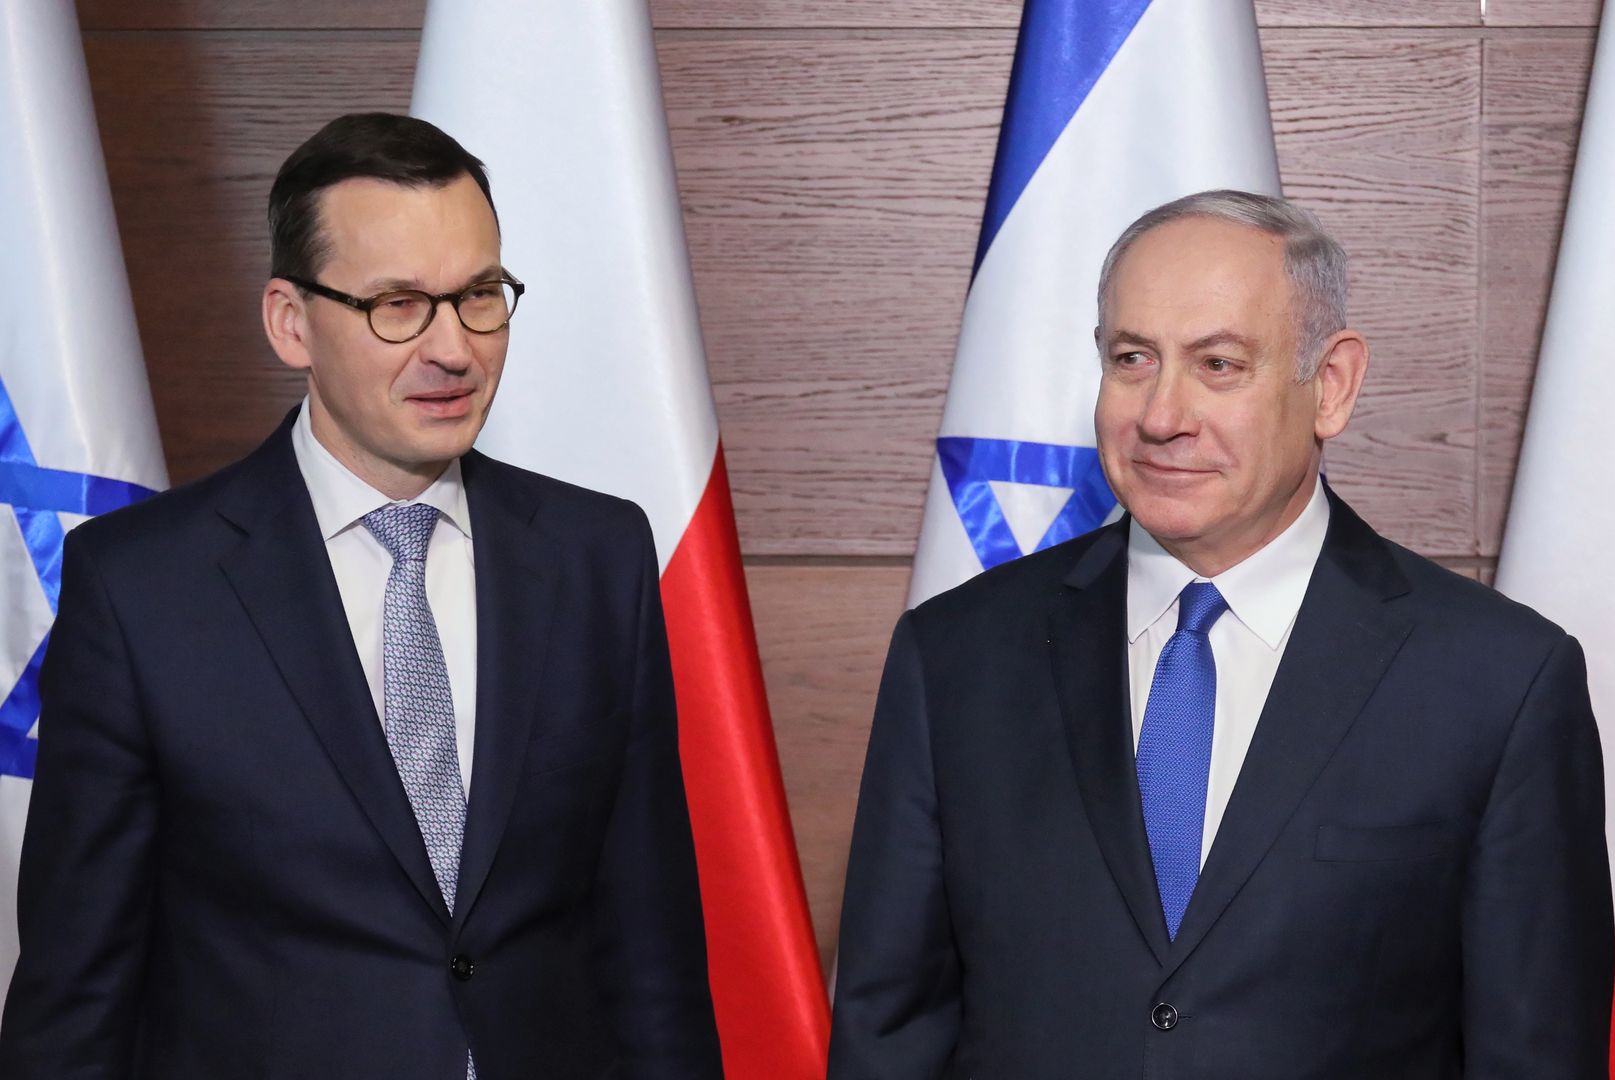 USA wzywają Polskę i Izrael do wzajemnego dialogu